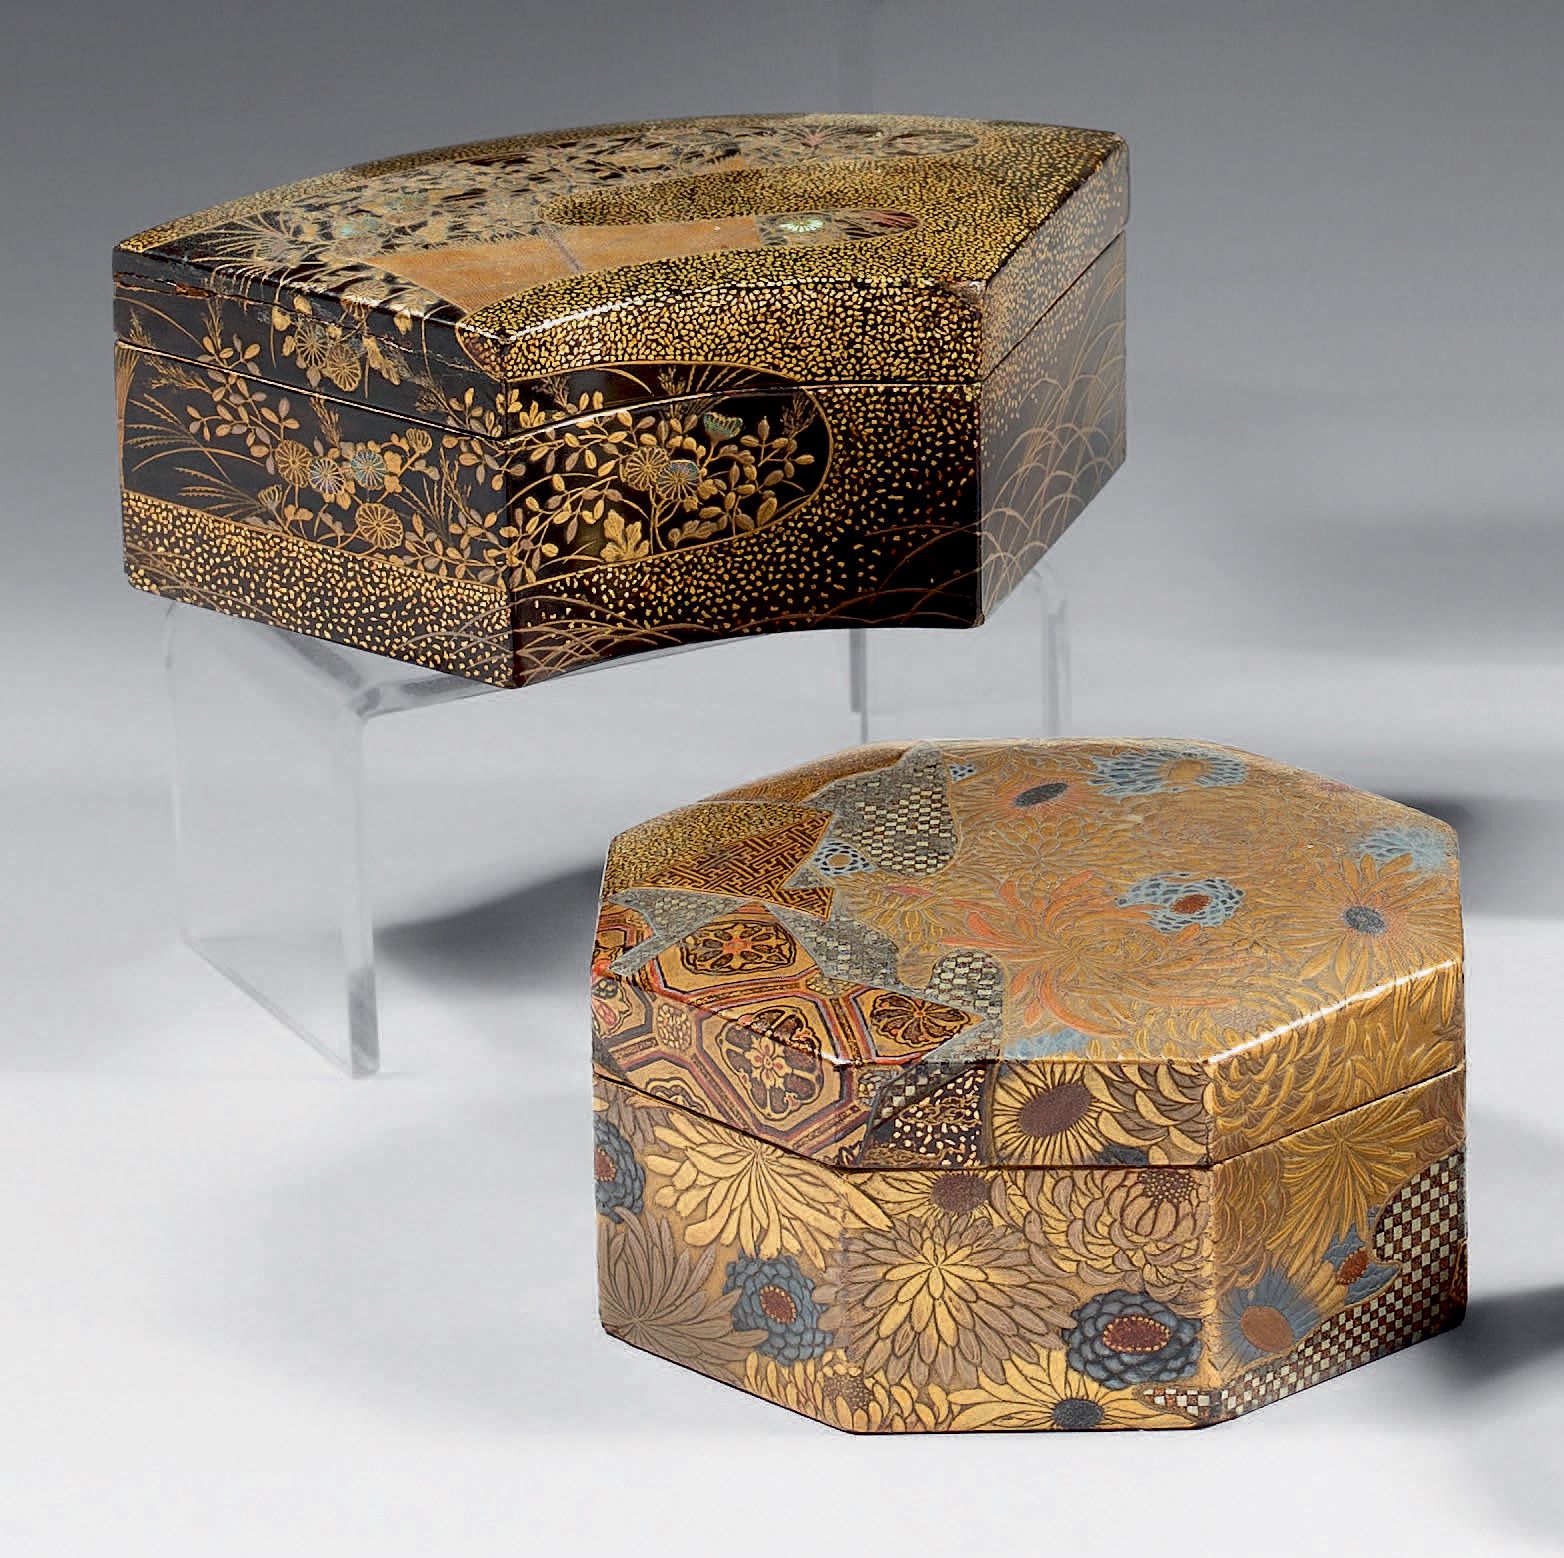 JAPON - Époque Edo (1603-1868), XIXe siècle 金、银、红漆的八角形盒子，上面有菊花的平纹装饰，以及用棋盘、卍字和花朵装&hellip;